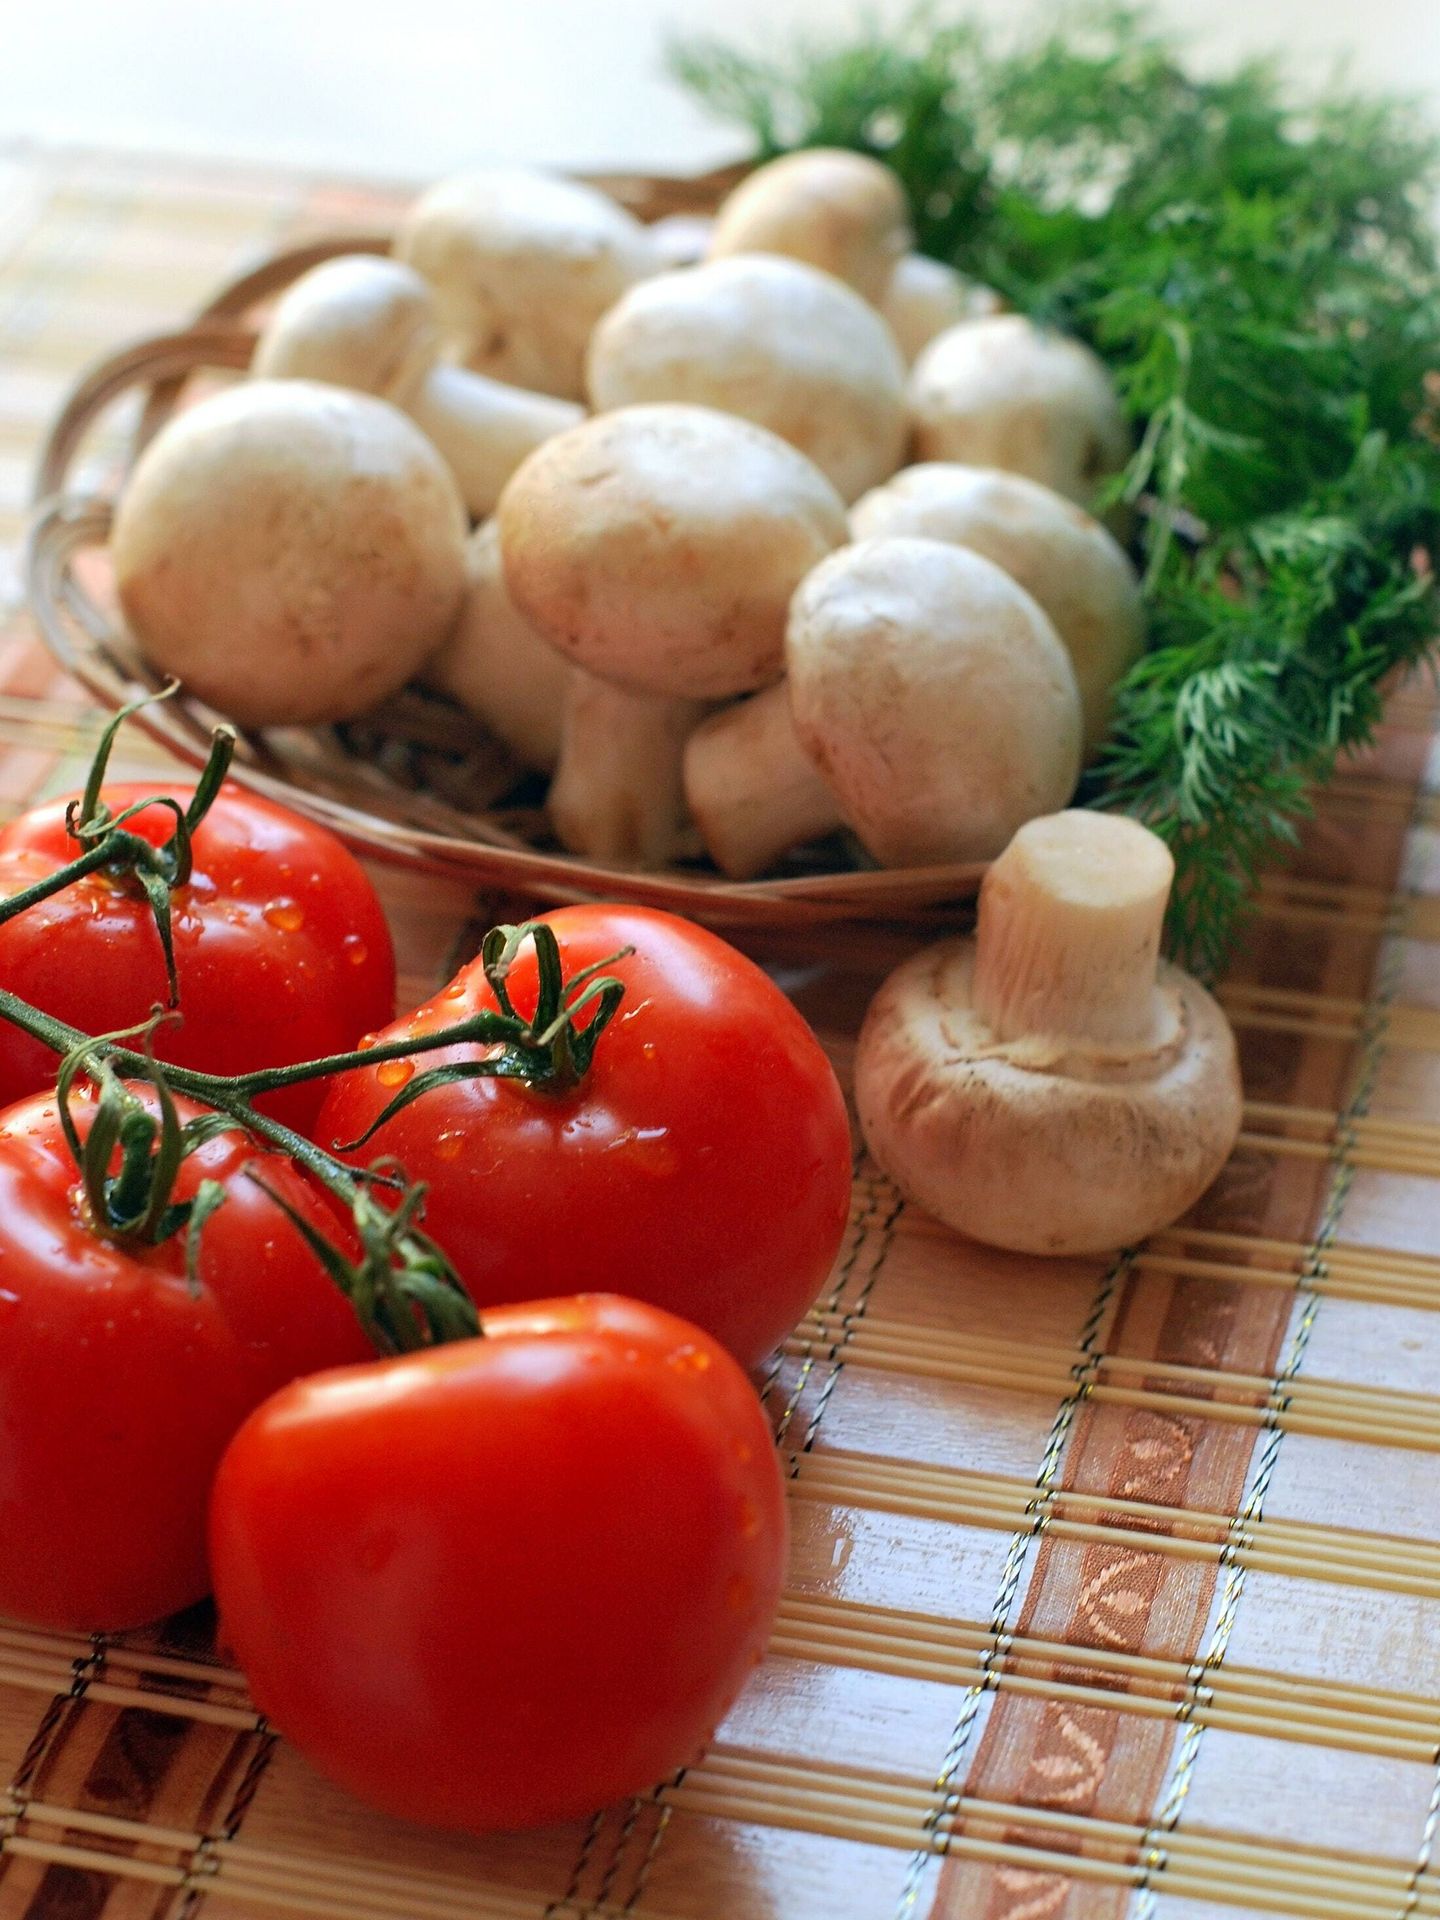 Se pueden conseguir todas las proteínas necesarias siguiendo una dieta vegana equilibrada. (Pexels/ Pixabay)